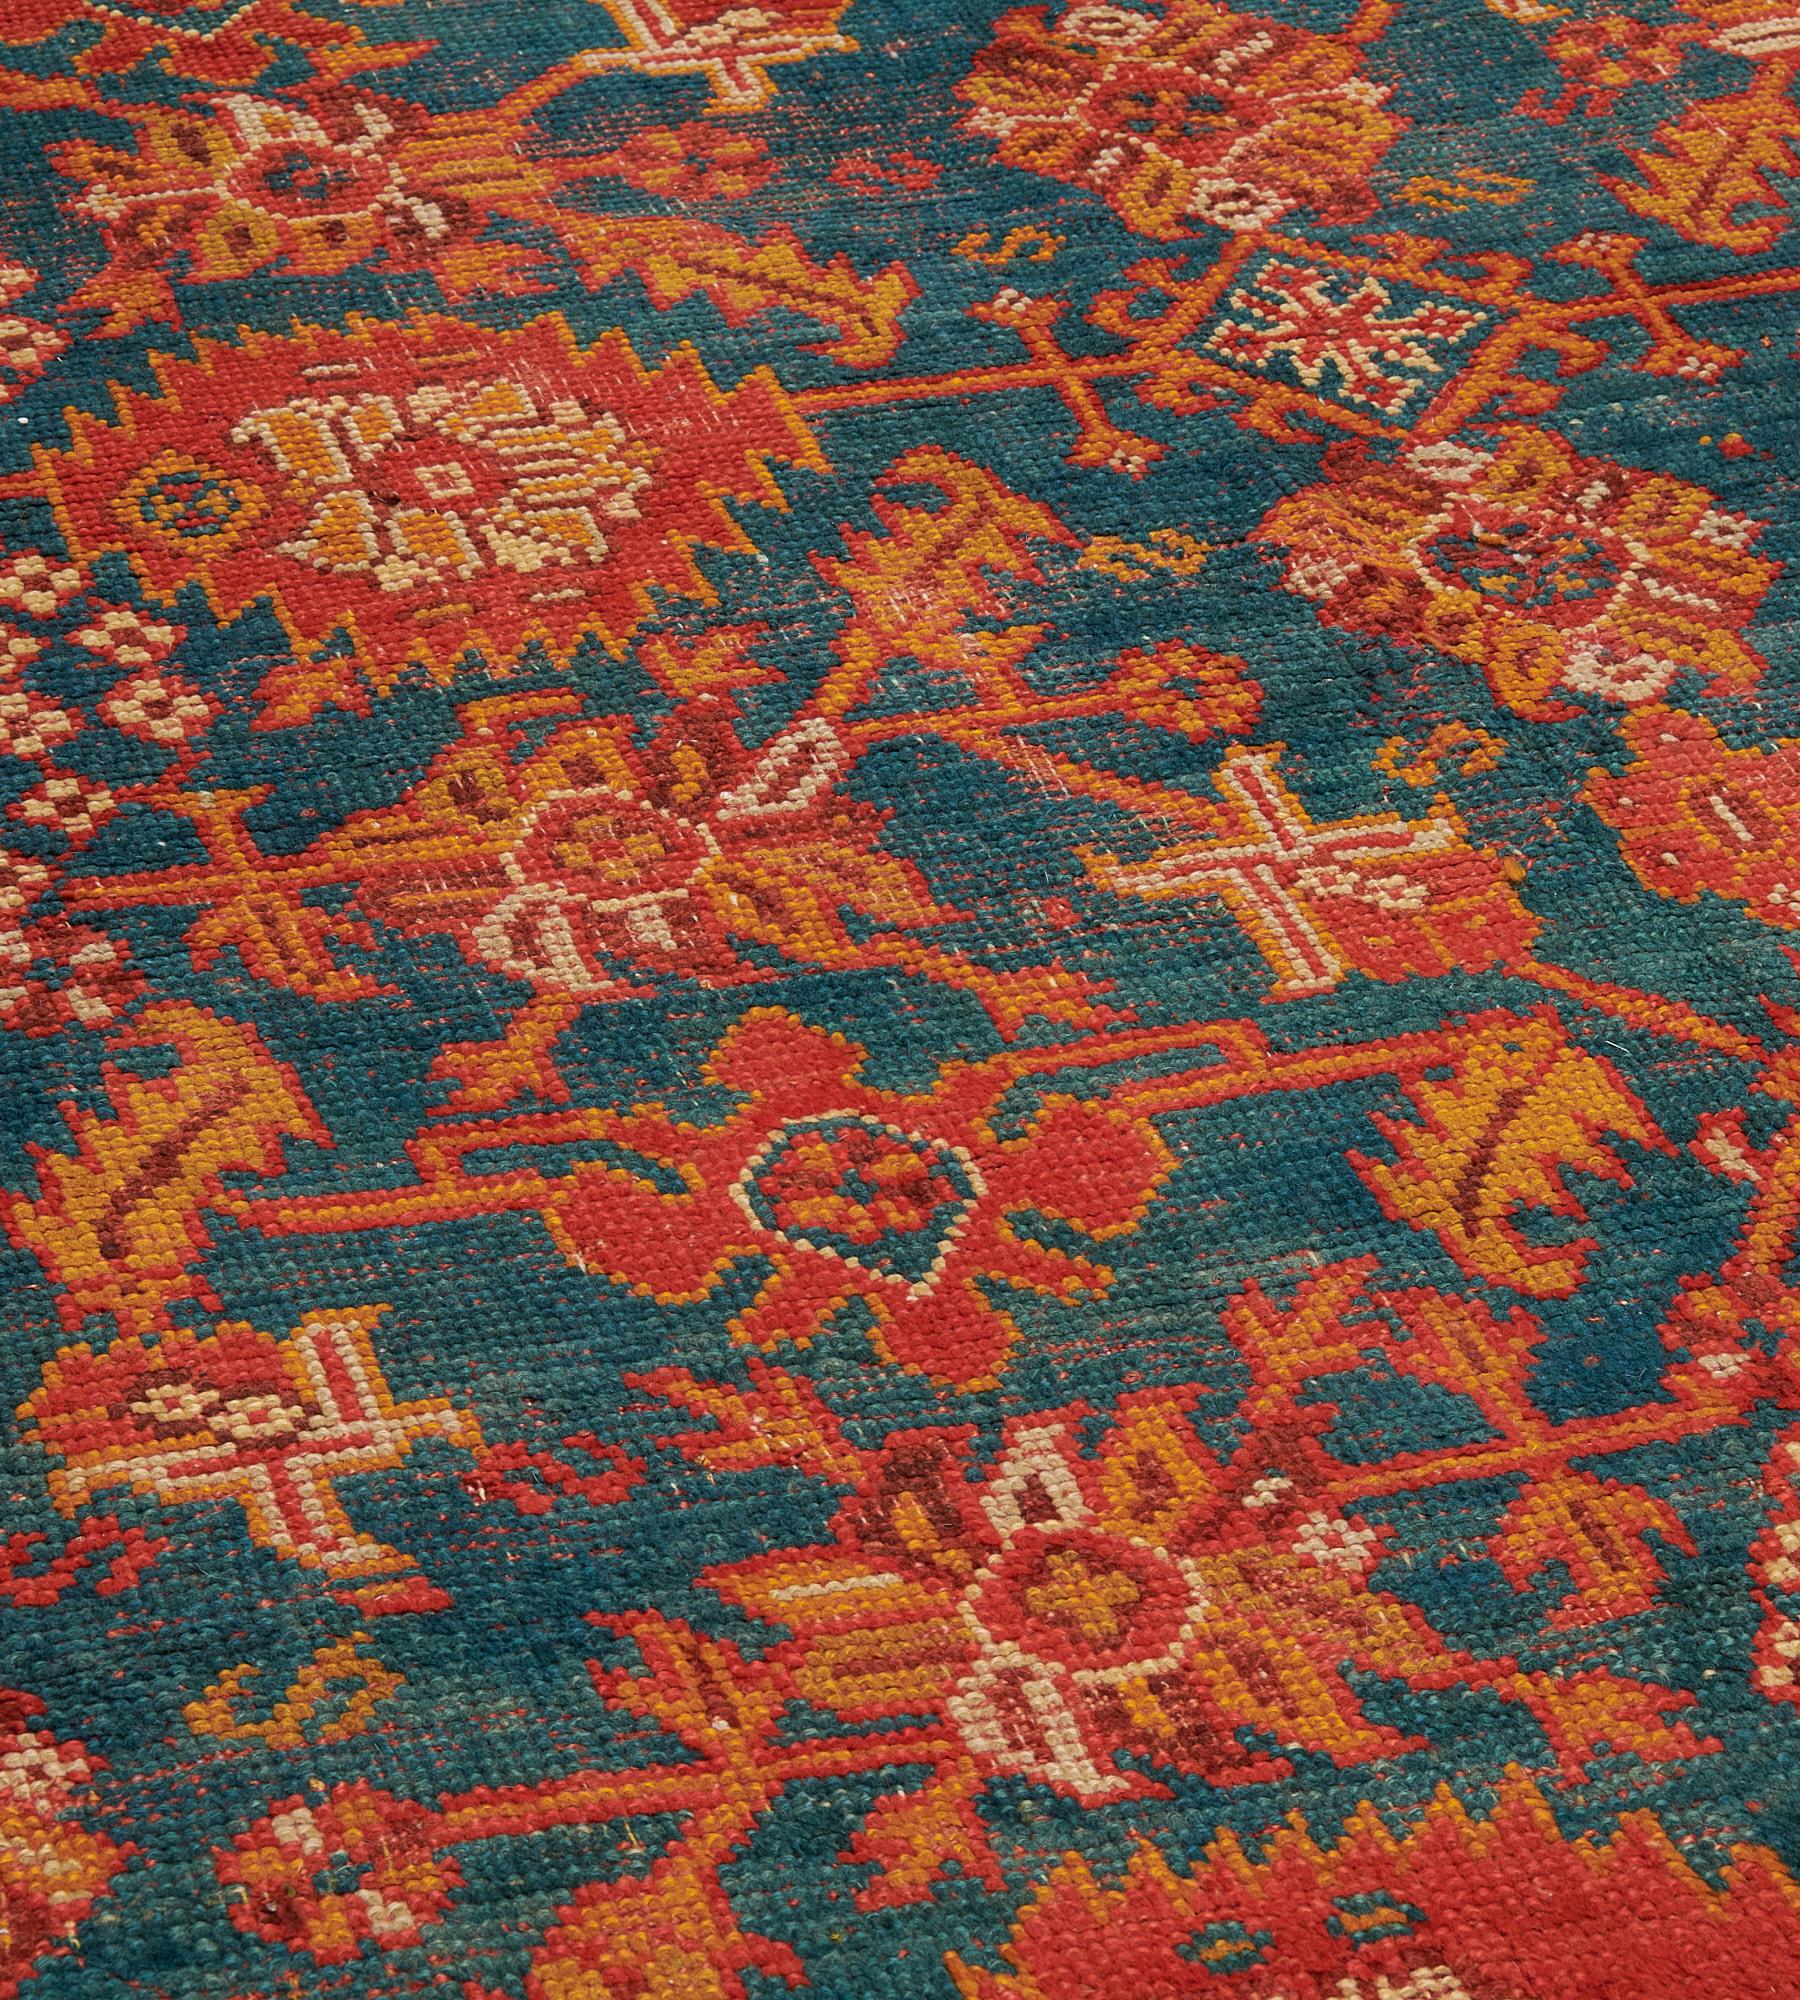 Dieser traditionelle, handgewebte türkische Oushak-Teppich hat ein schattiertes, blaues Feld mit einem Gesamtmuster aus tomatenroten, feuerorangen und elfenbeinfarbenen Palmetten und eckigen Blumen- und Blattranken in einer feuerorangenen Bordüre